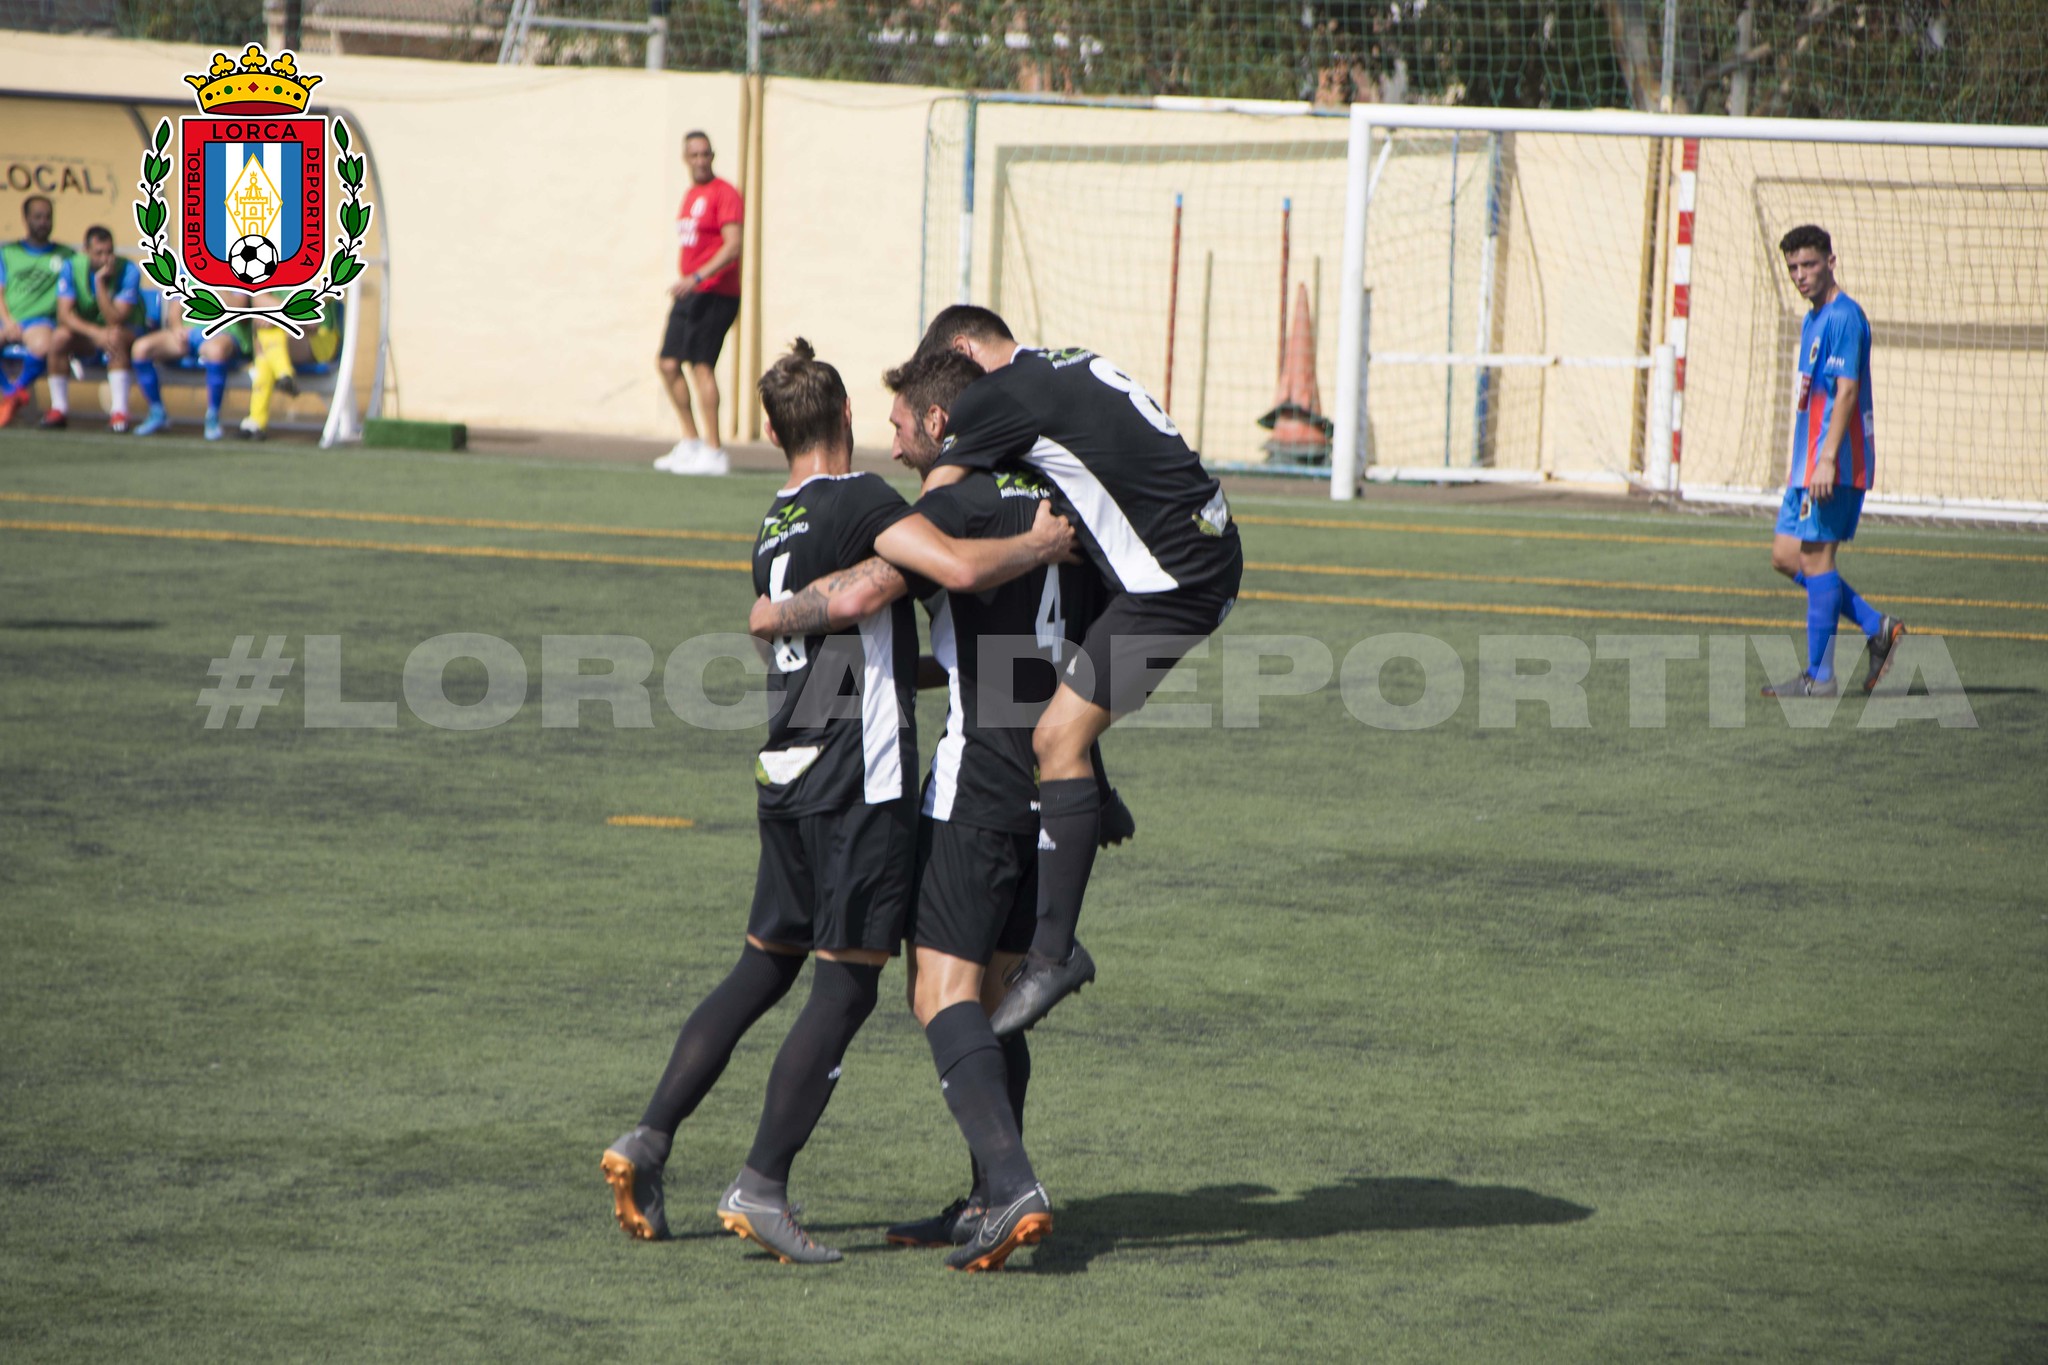 GALERÍA: Minerva 2-2 Lorca Deportiva